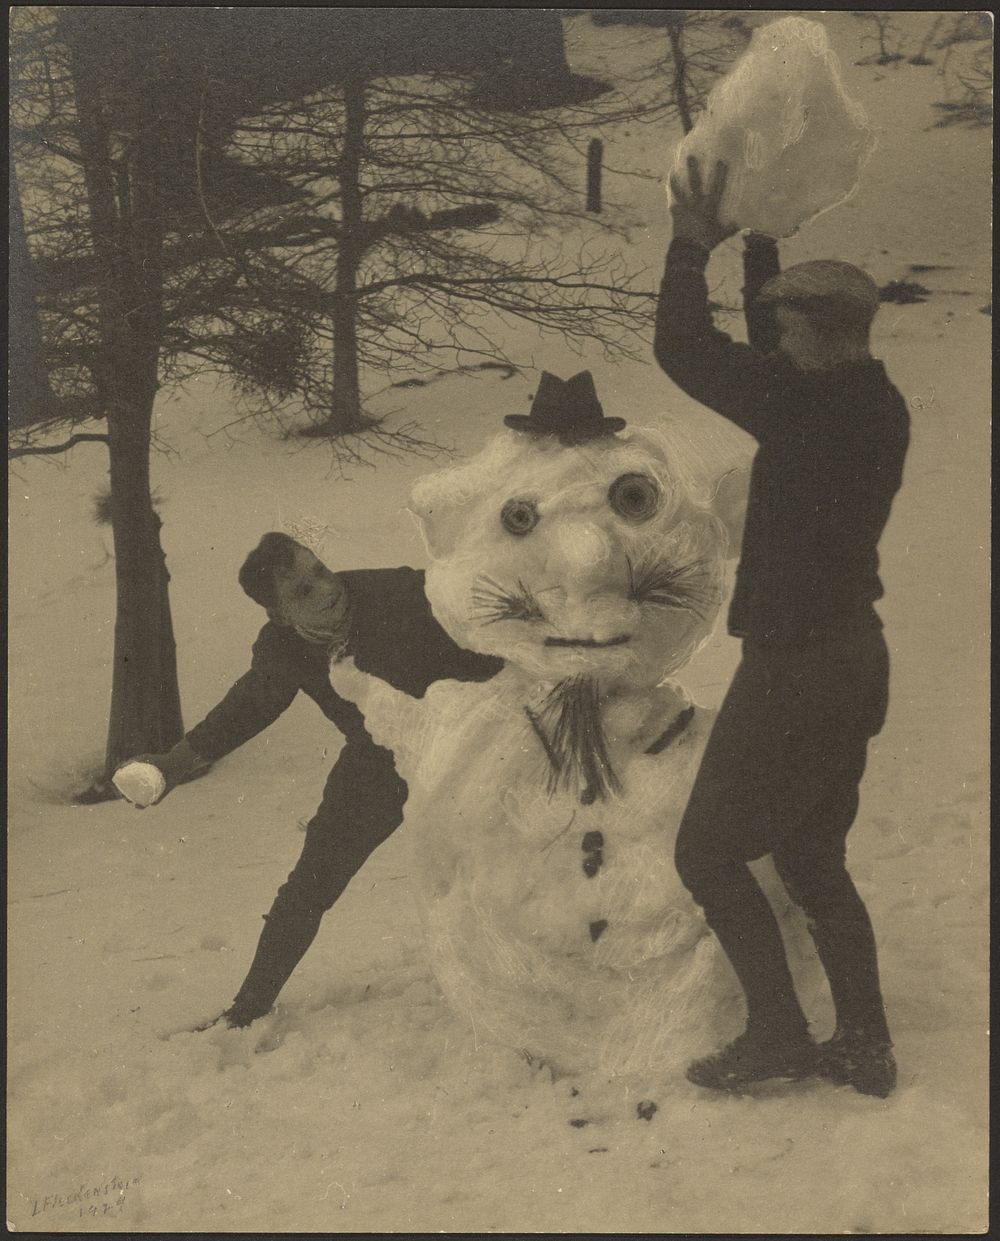 The Snowman by Louis Fleckenstein